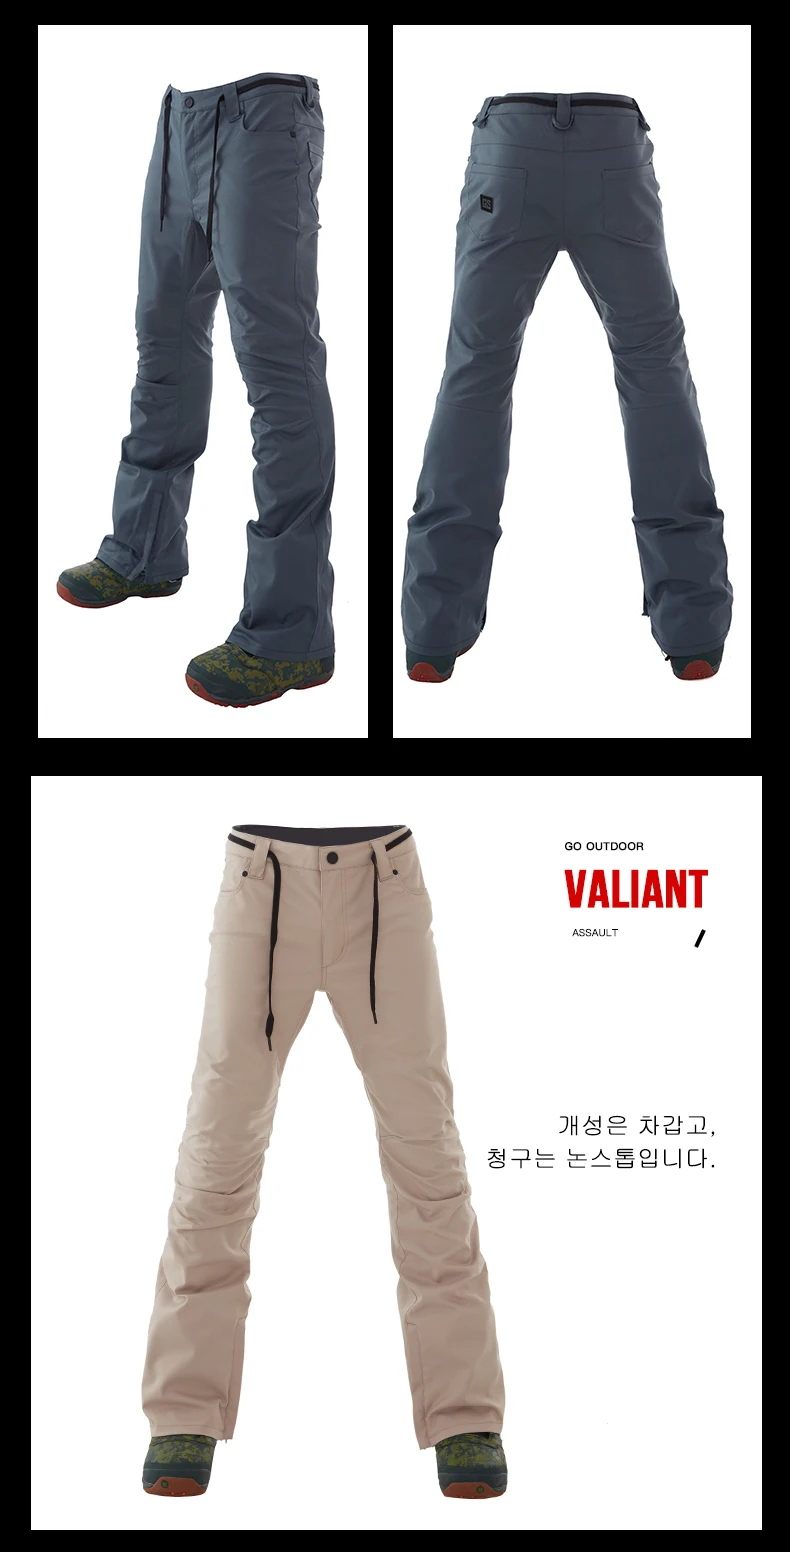 GSOU Снежный бренд, лыжные брюки, мужские водонепроницаемые штаны для сноуборда размера плюс, зимние лыжные штаны для сноубординга, мужские уличные спортивные штаны